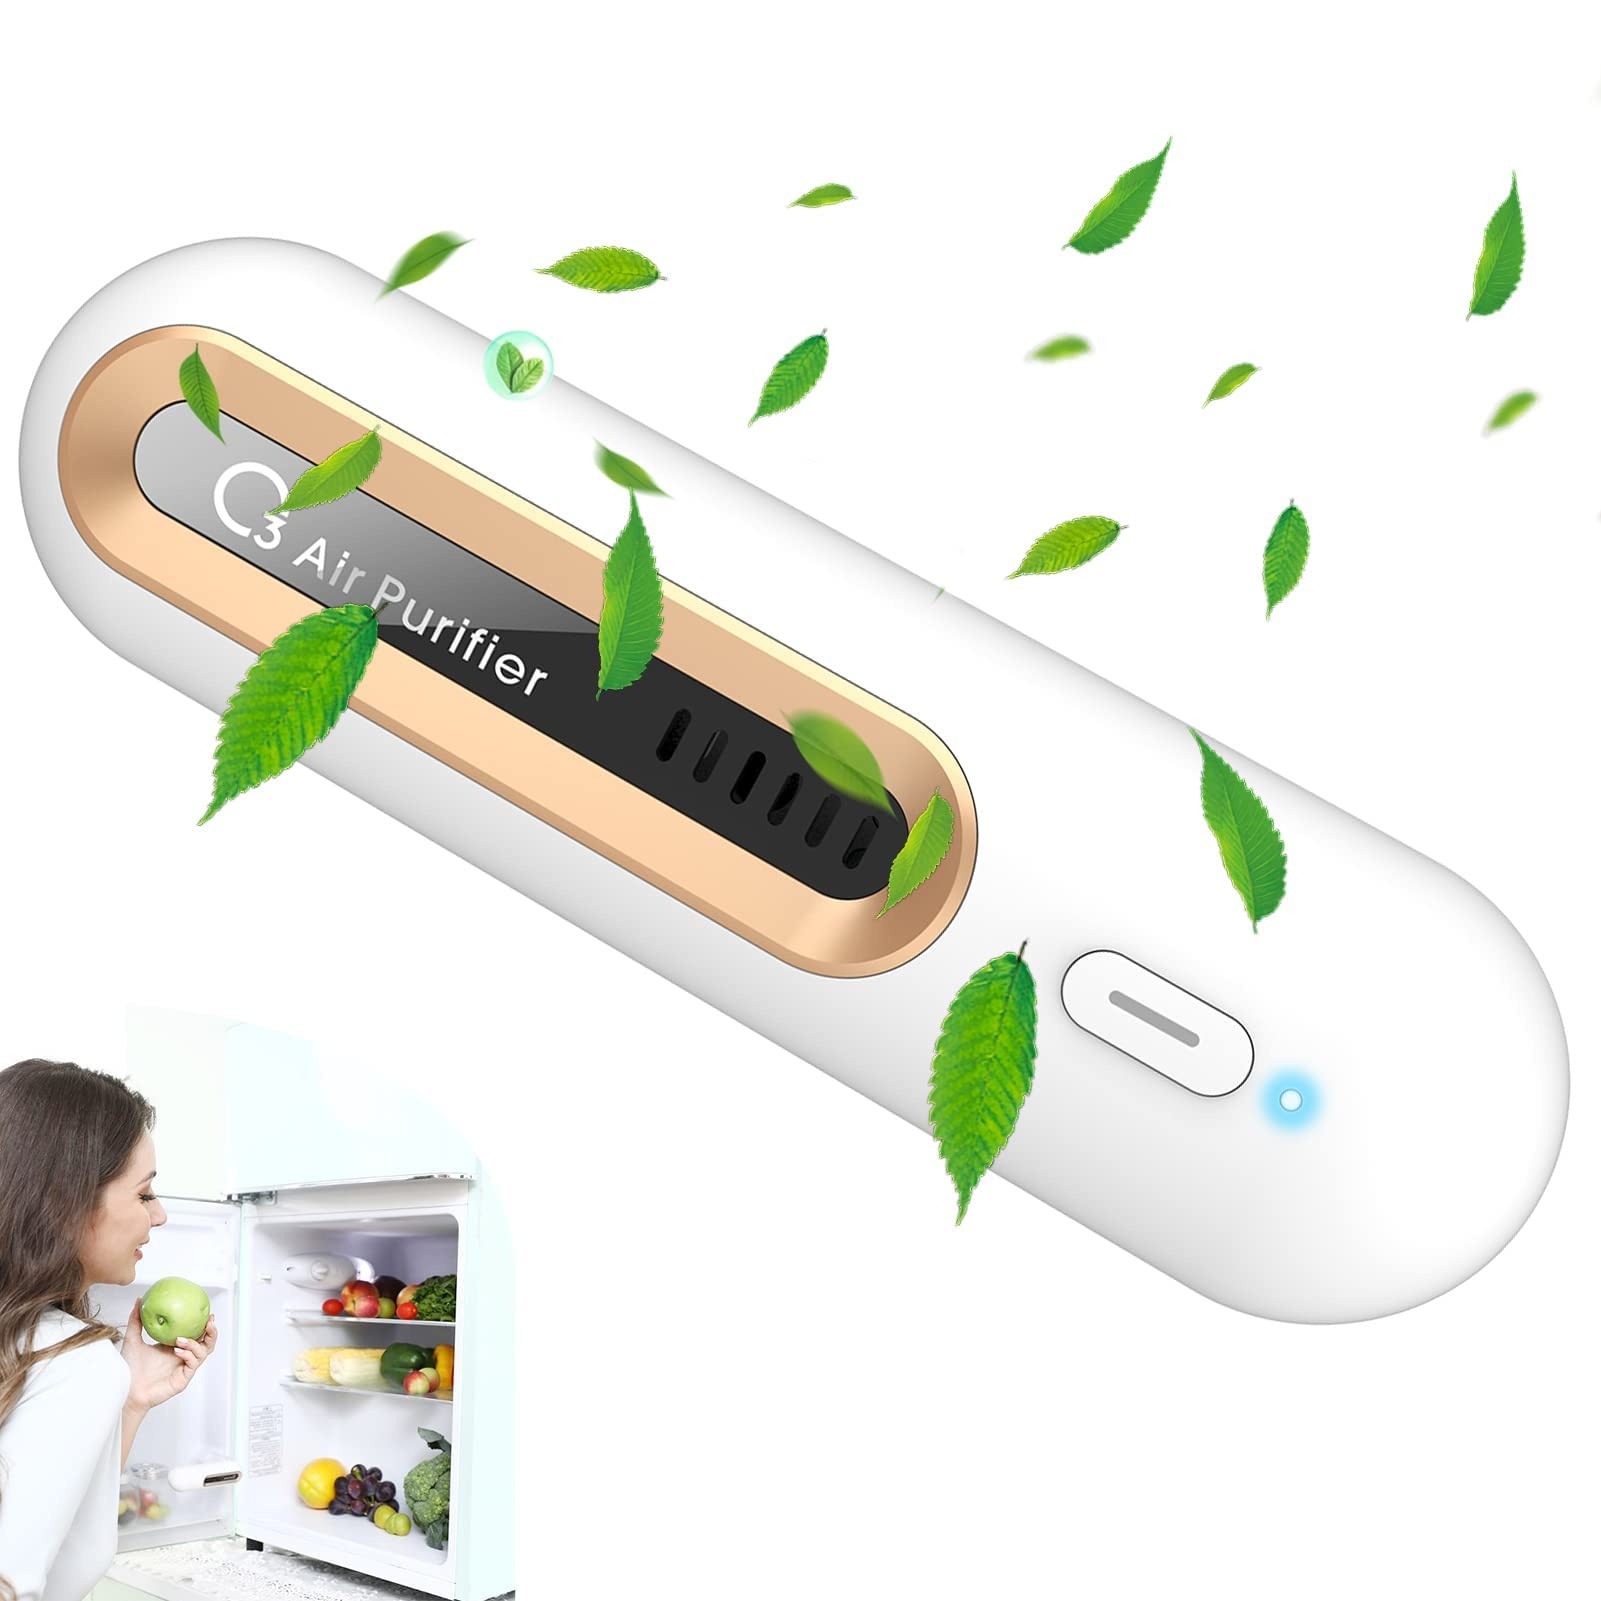 Mini Kühlschrank Deo USB Kühlschrank Geruchskiller Tragbar O3 Ozongenerator Luftreiniger, Wiederverwendbar Geruchsneutralisierer, kleiner Ozon-Luftreiniger für Kühlschrank, Auto, Schuhschrank